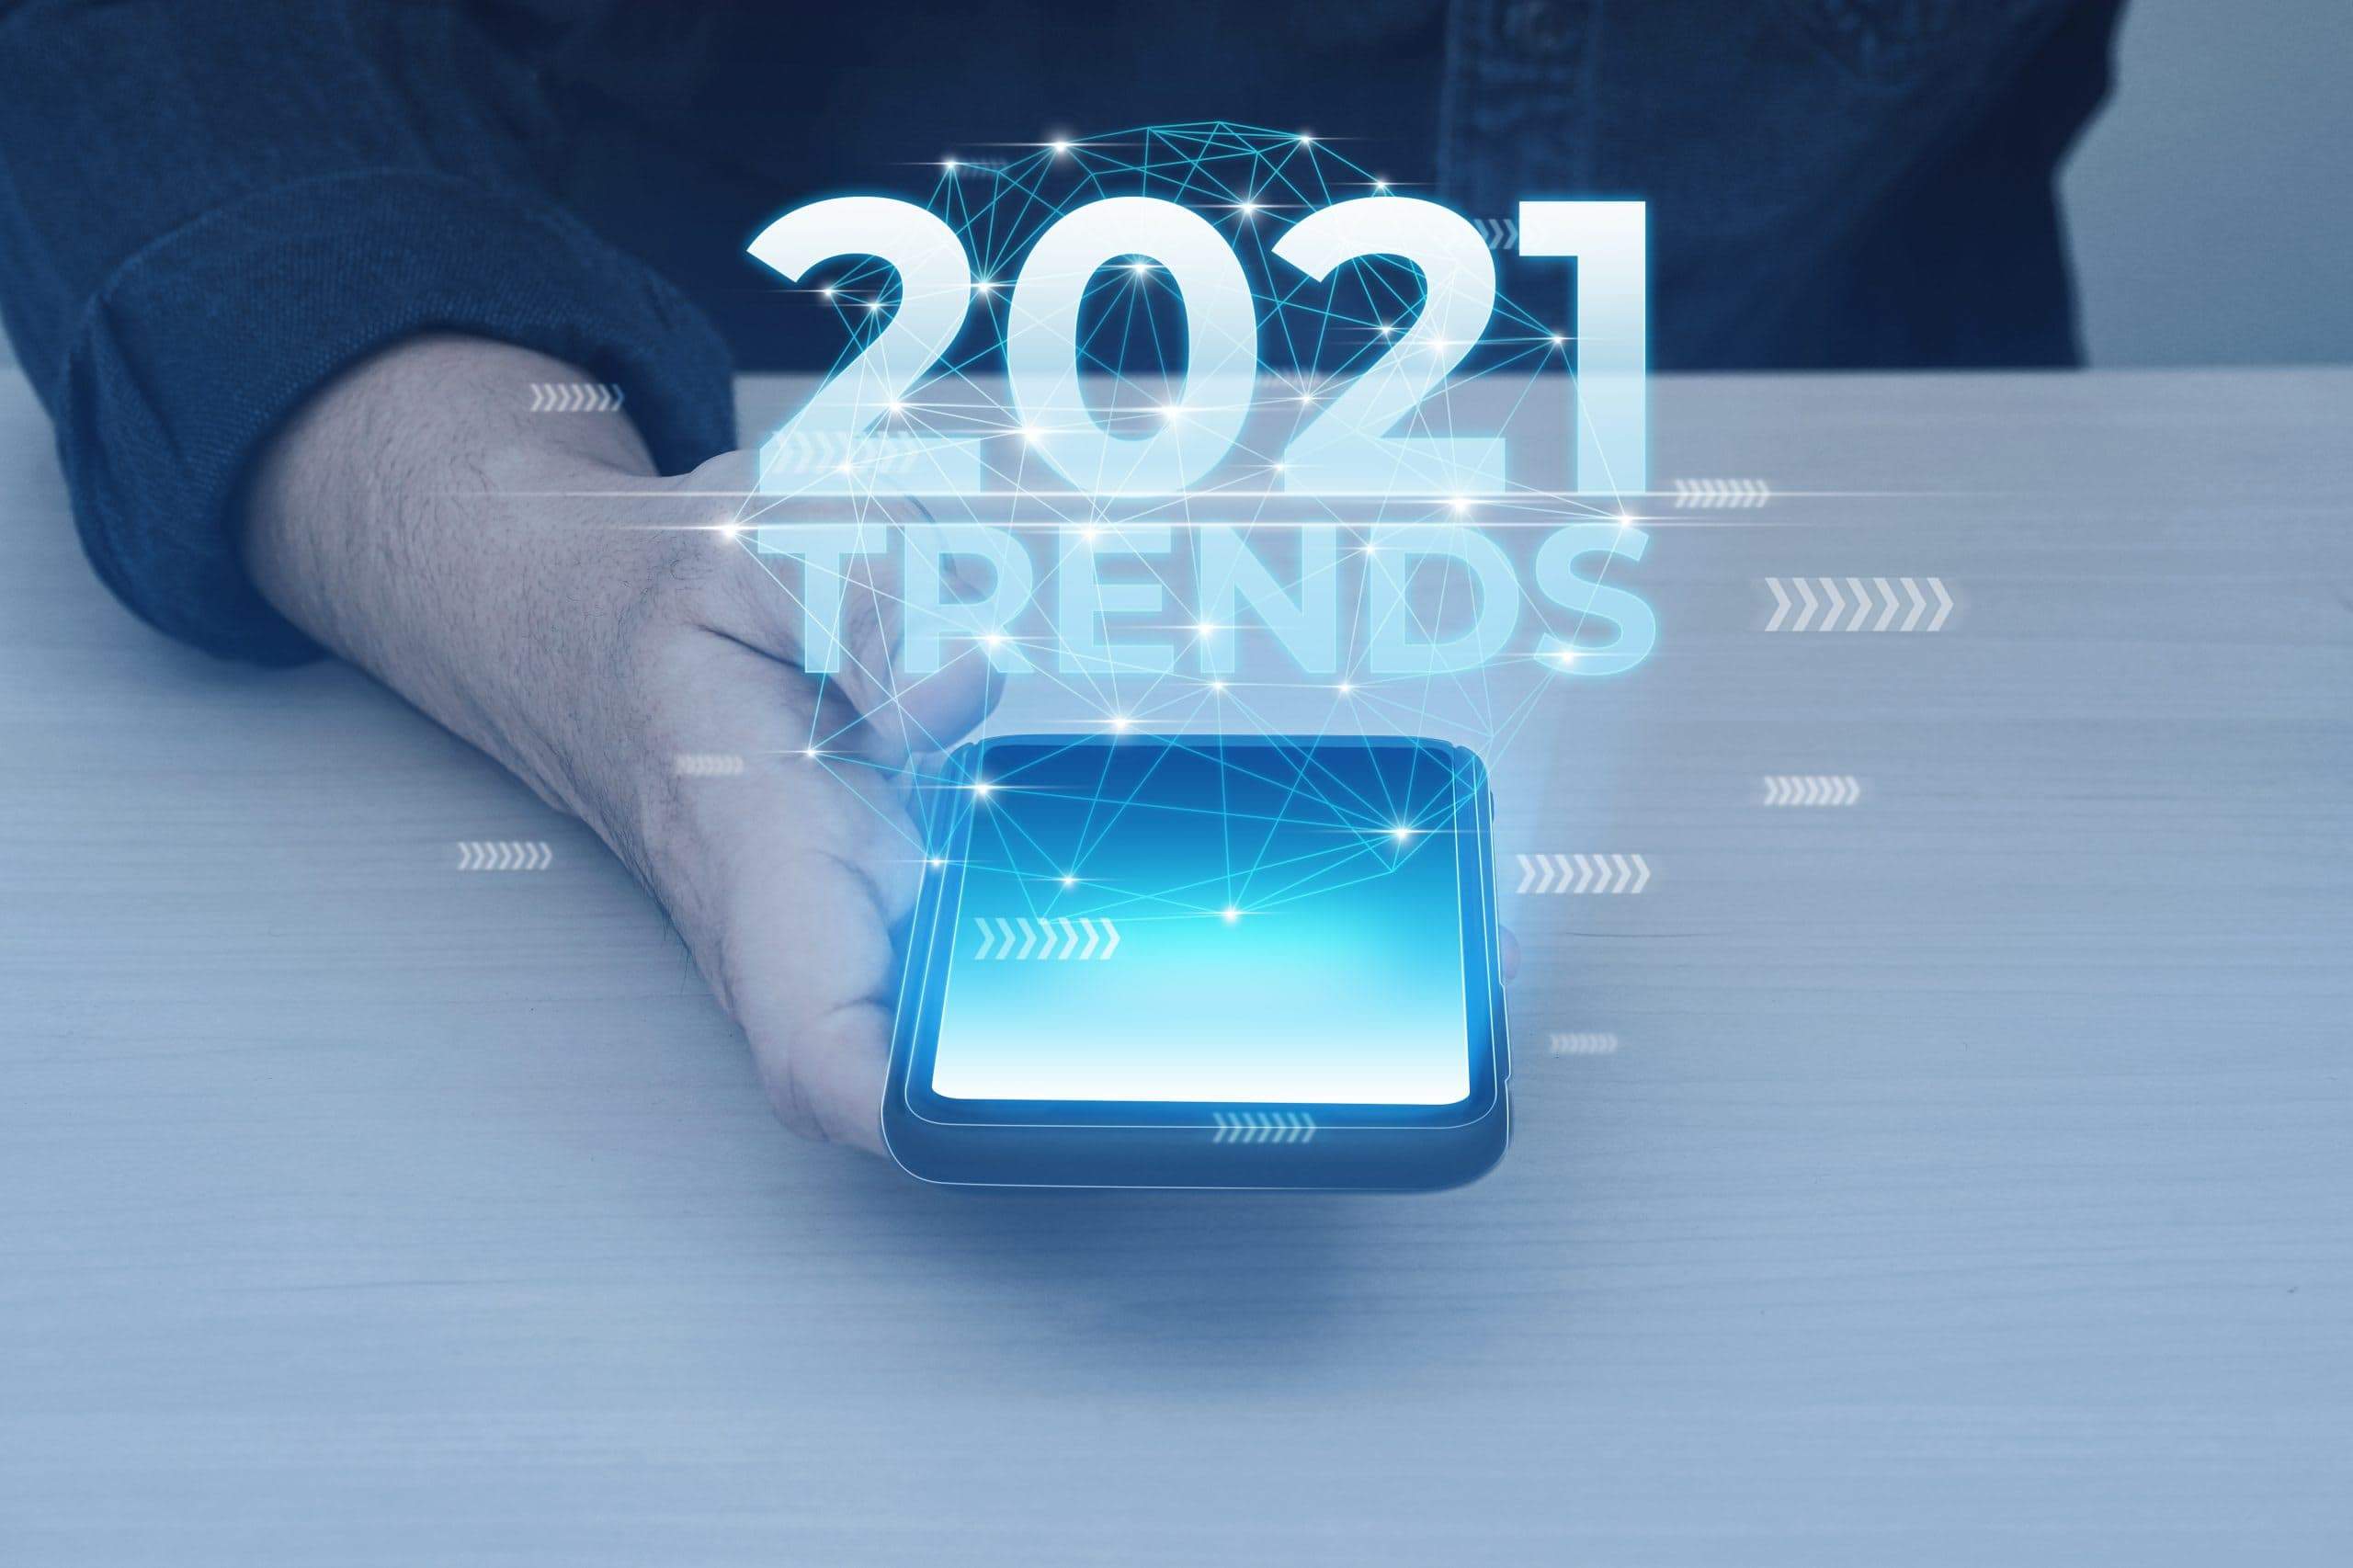 4 Key Media Entertainment & OTT Trends for 2021